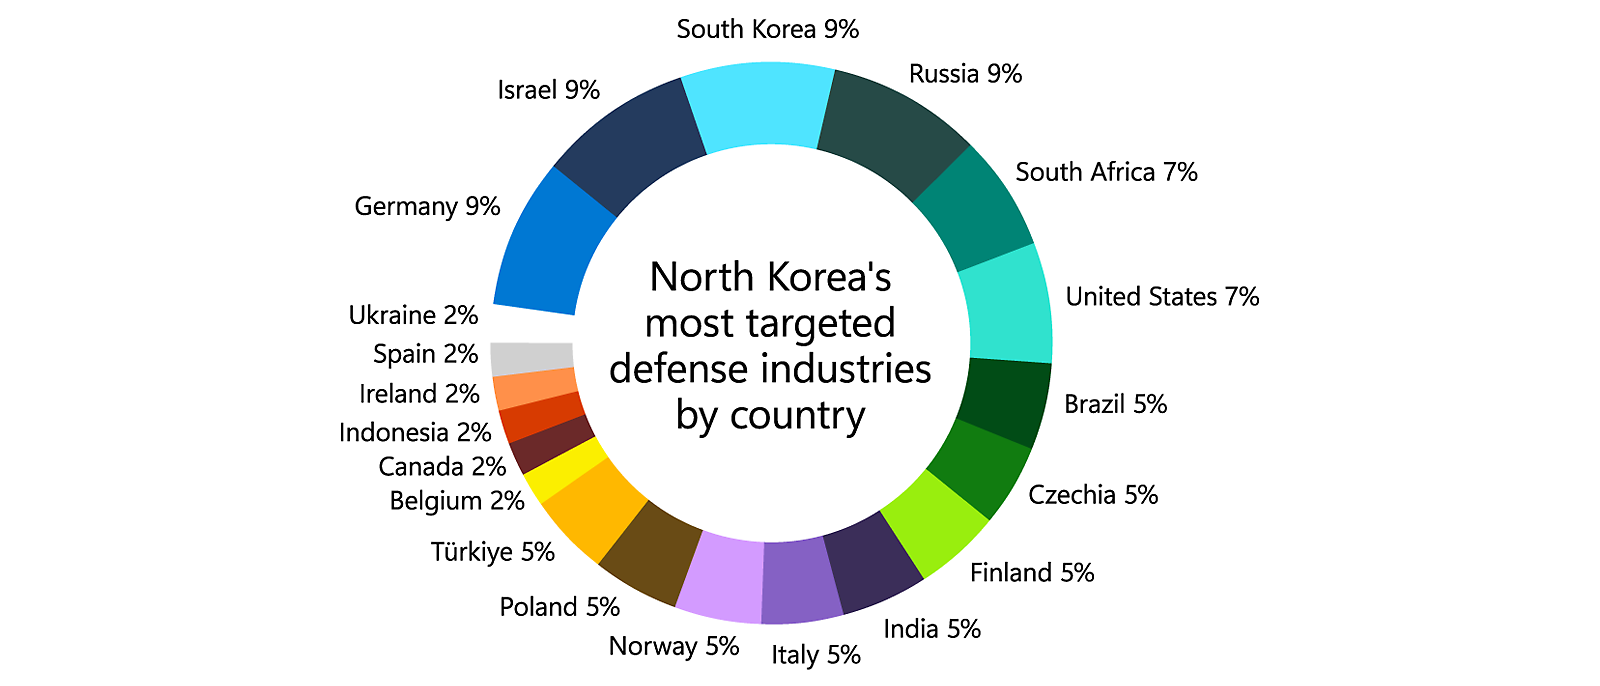 Kuchendiagramm, das die von Nordkorea am meisten angegriffenen Rüstungsindustrien nach Ländern zeigt